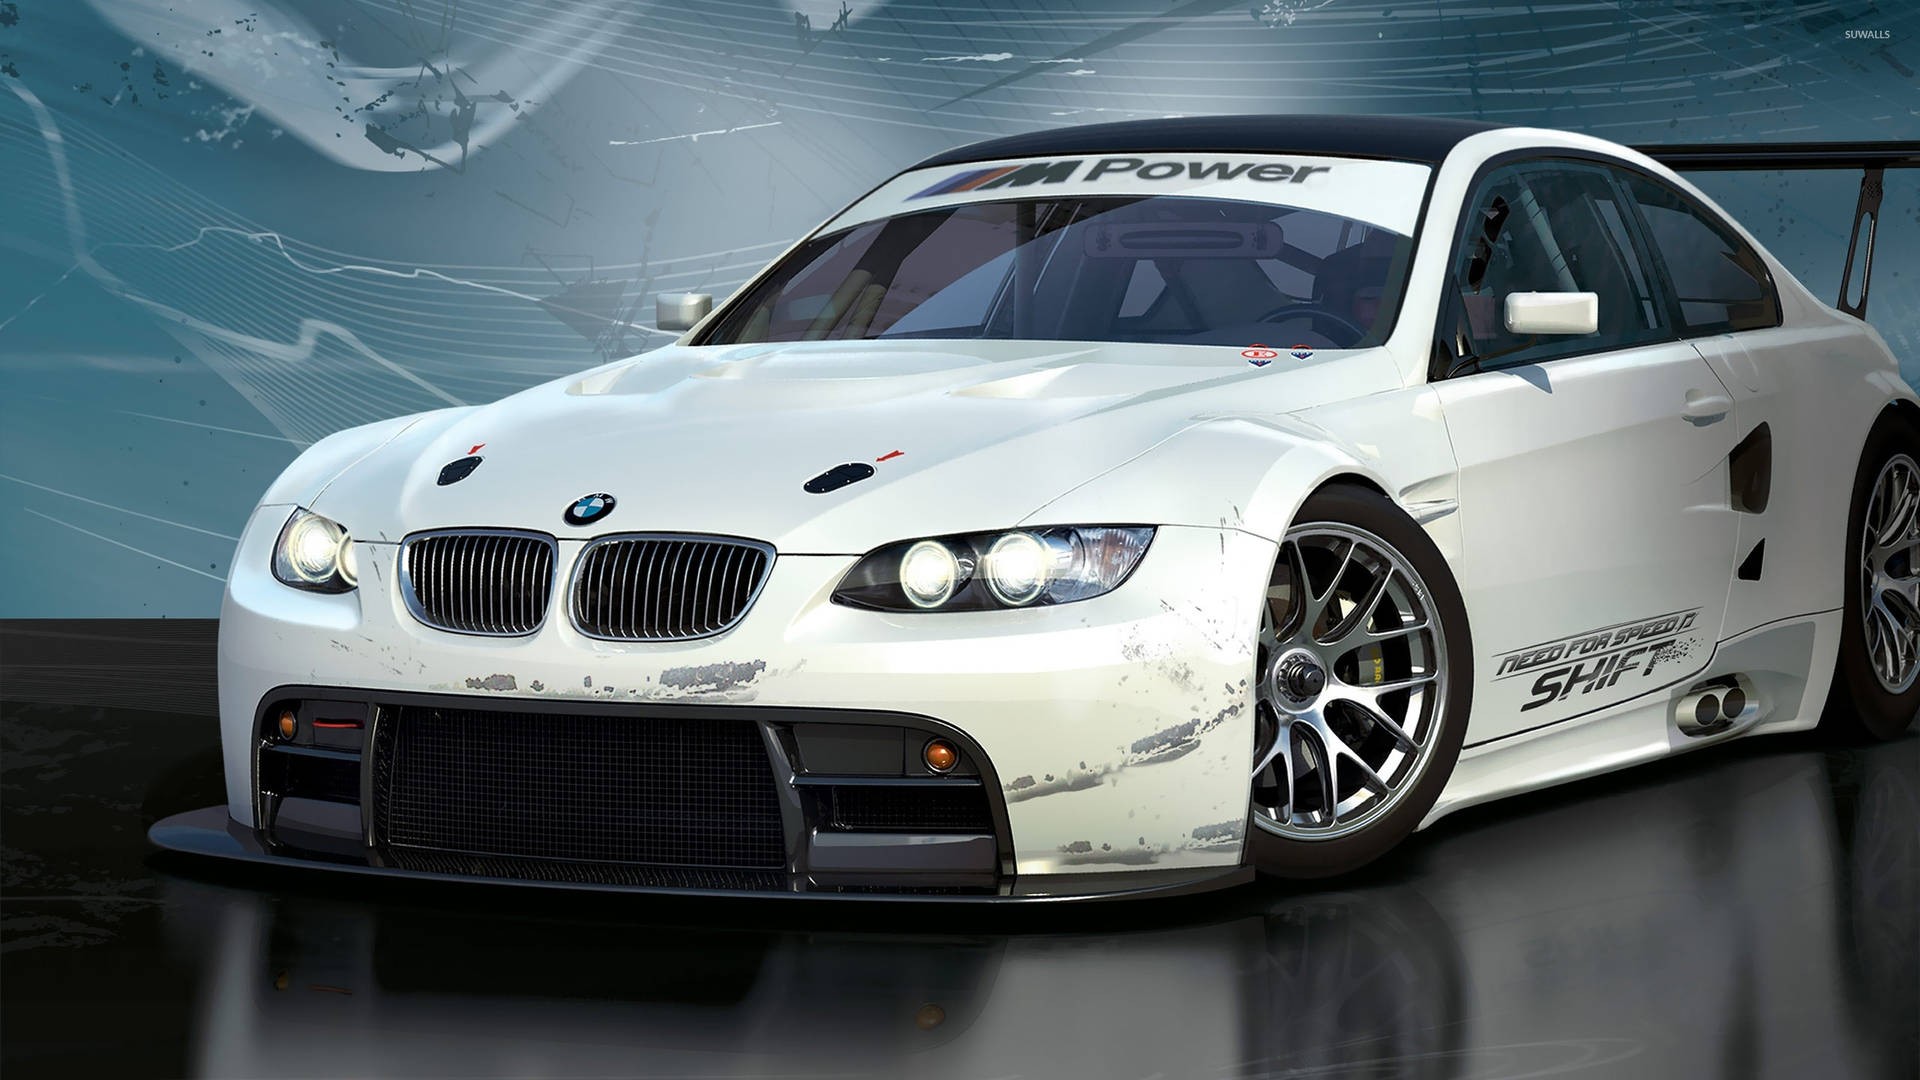 White BMW M Power Wallpaper